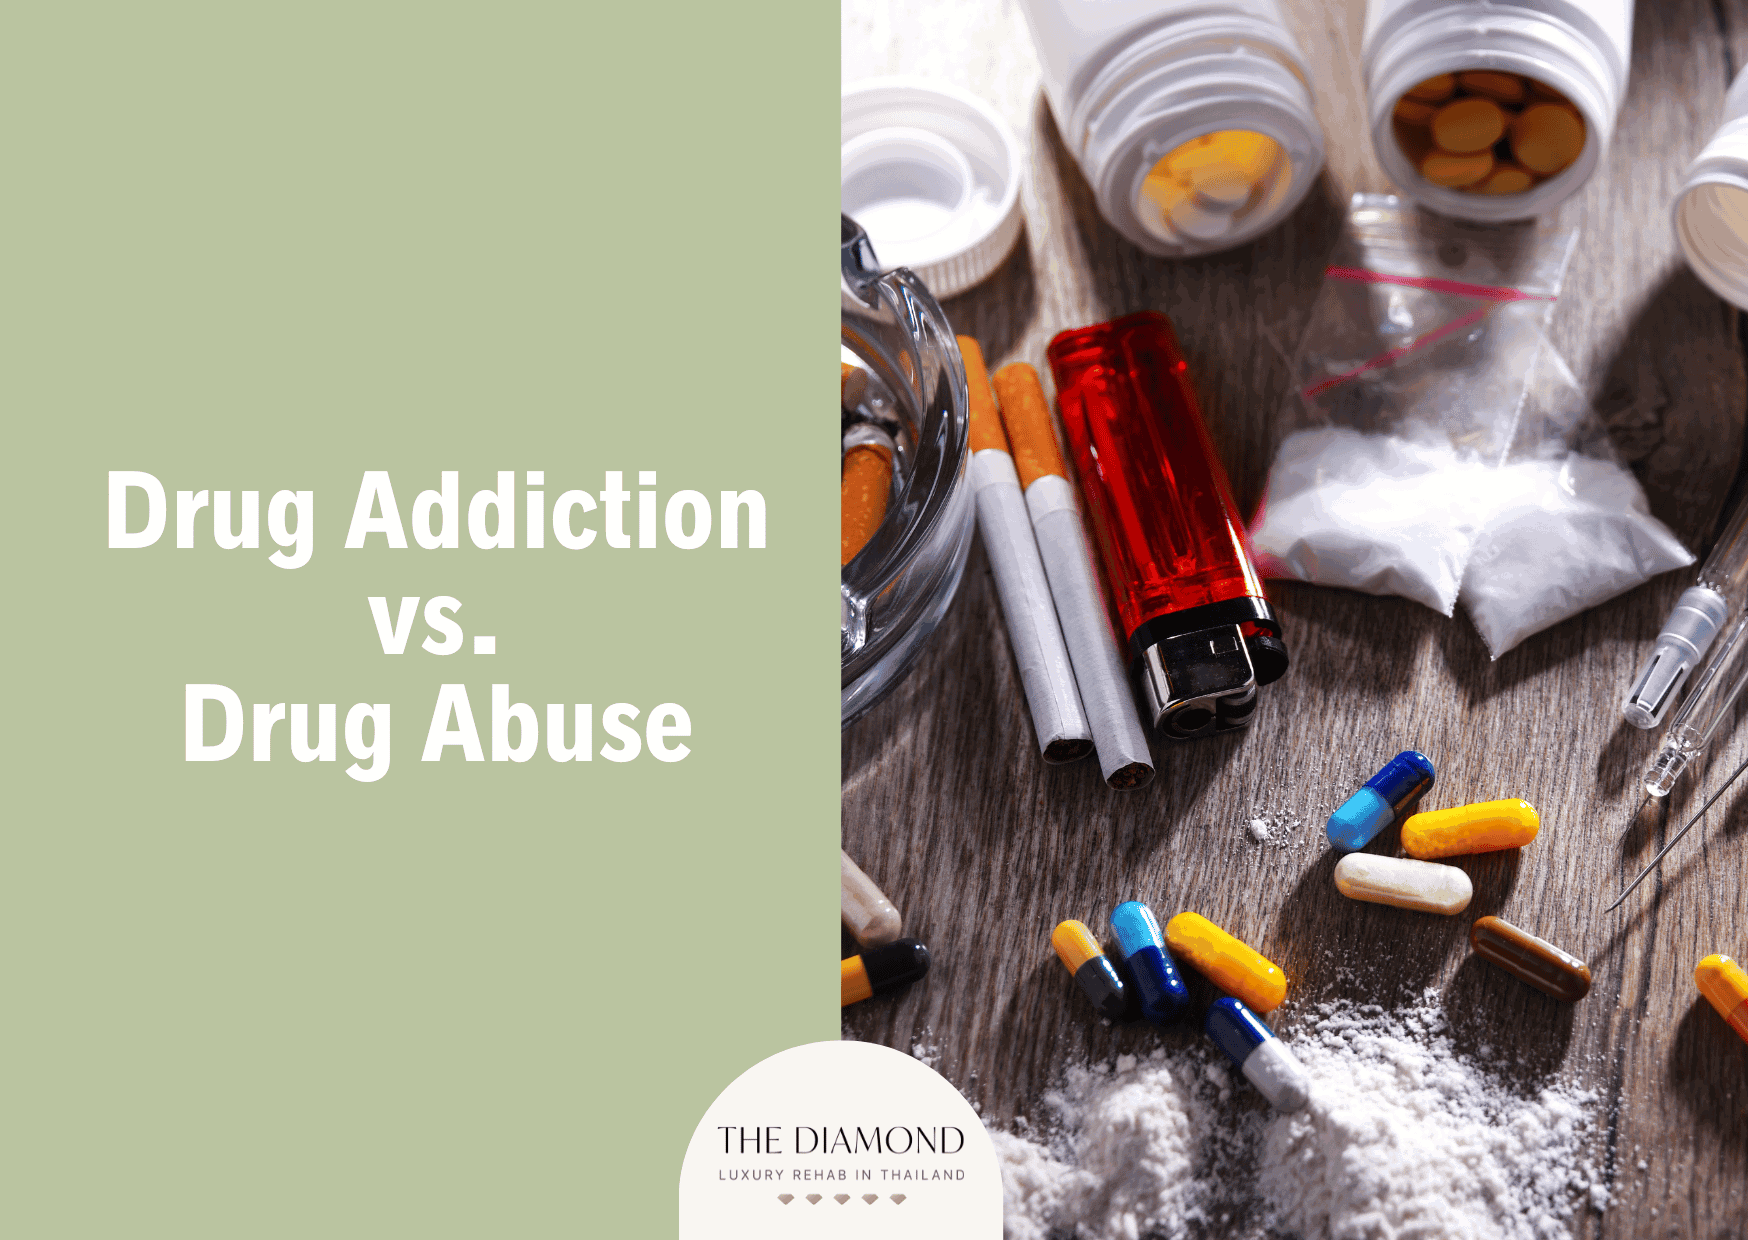 Drug addiction vs. drug abuse